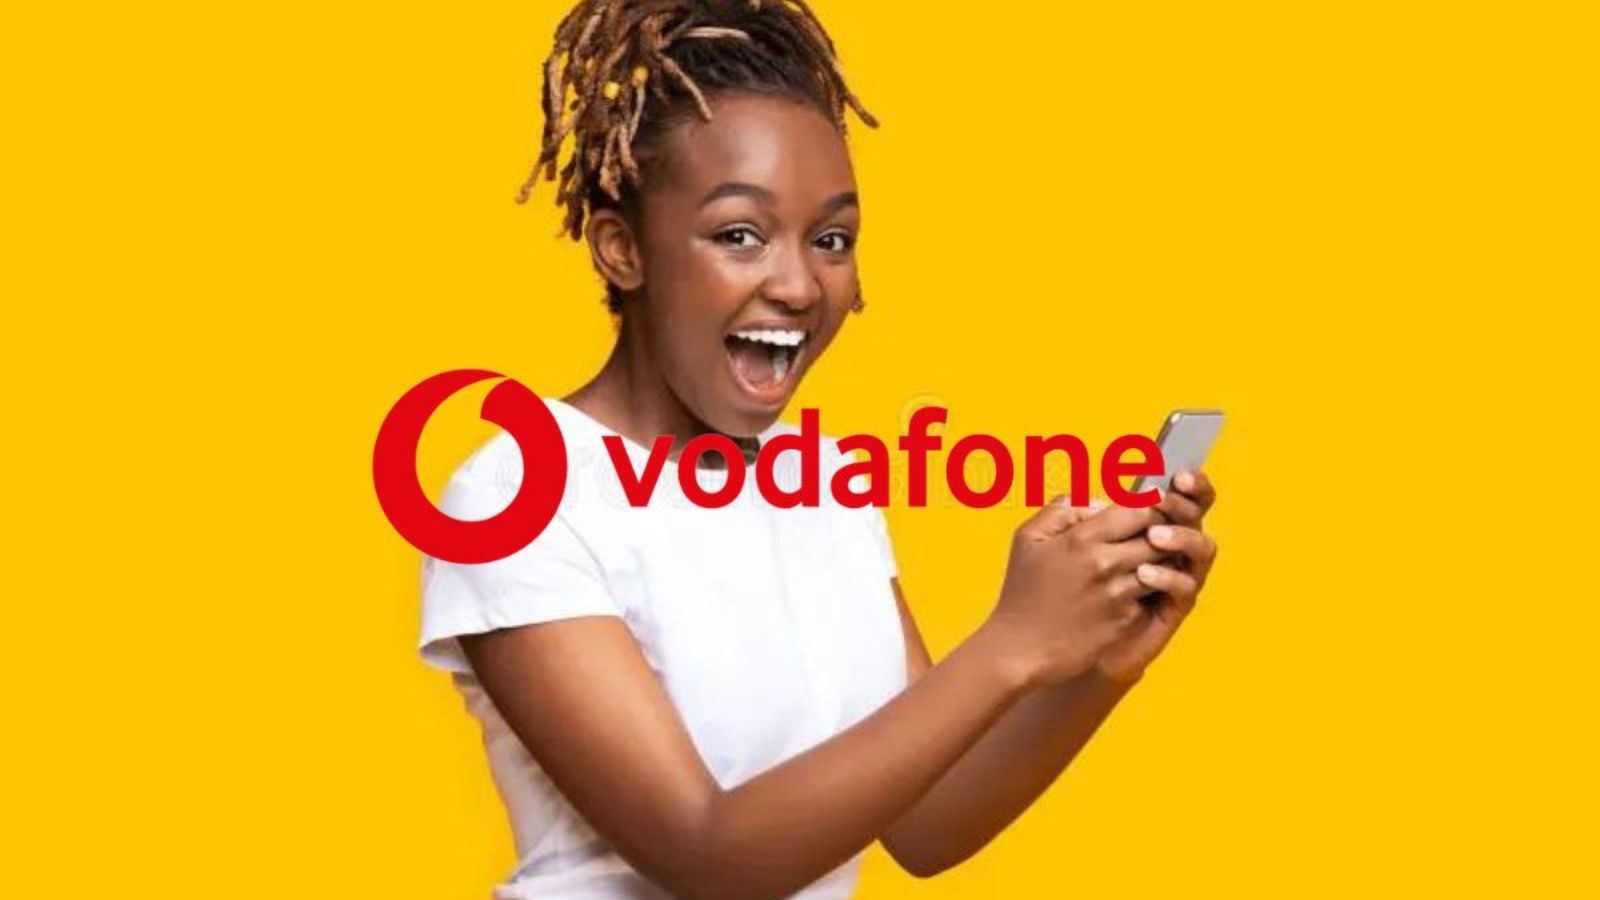 Vodafone batte TIM con GIGA SENZA LIMITI ogni mese in regalo 